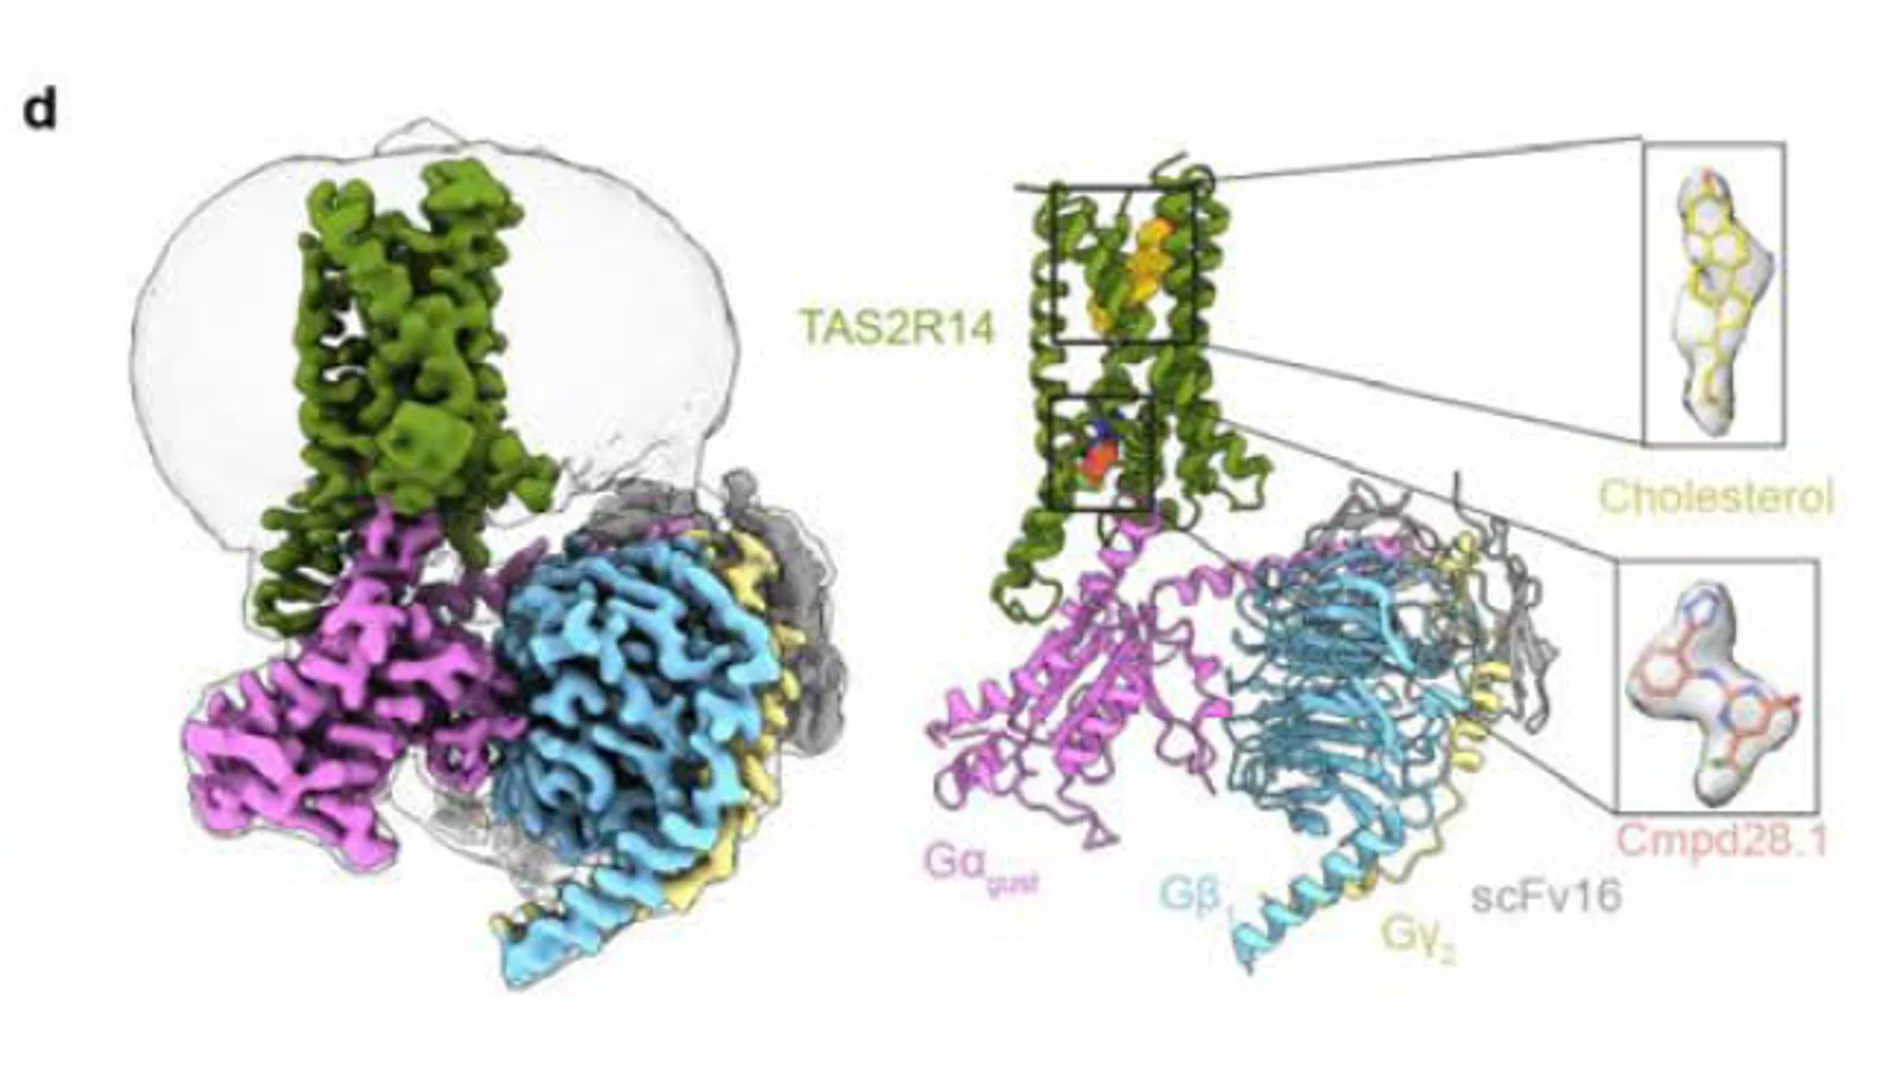 Imagen tomada con un microscopio electrónico (izquierda) y su respectivo modelo (derecha) de la proteína TAS2R14, que funciona como receptor del sabor amargo